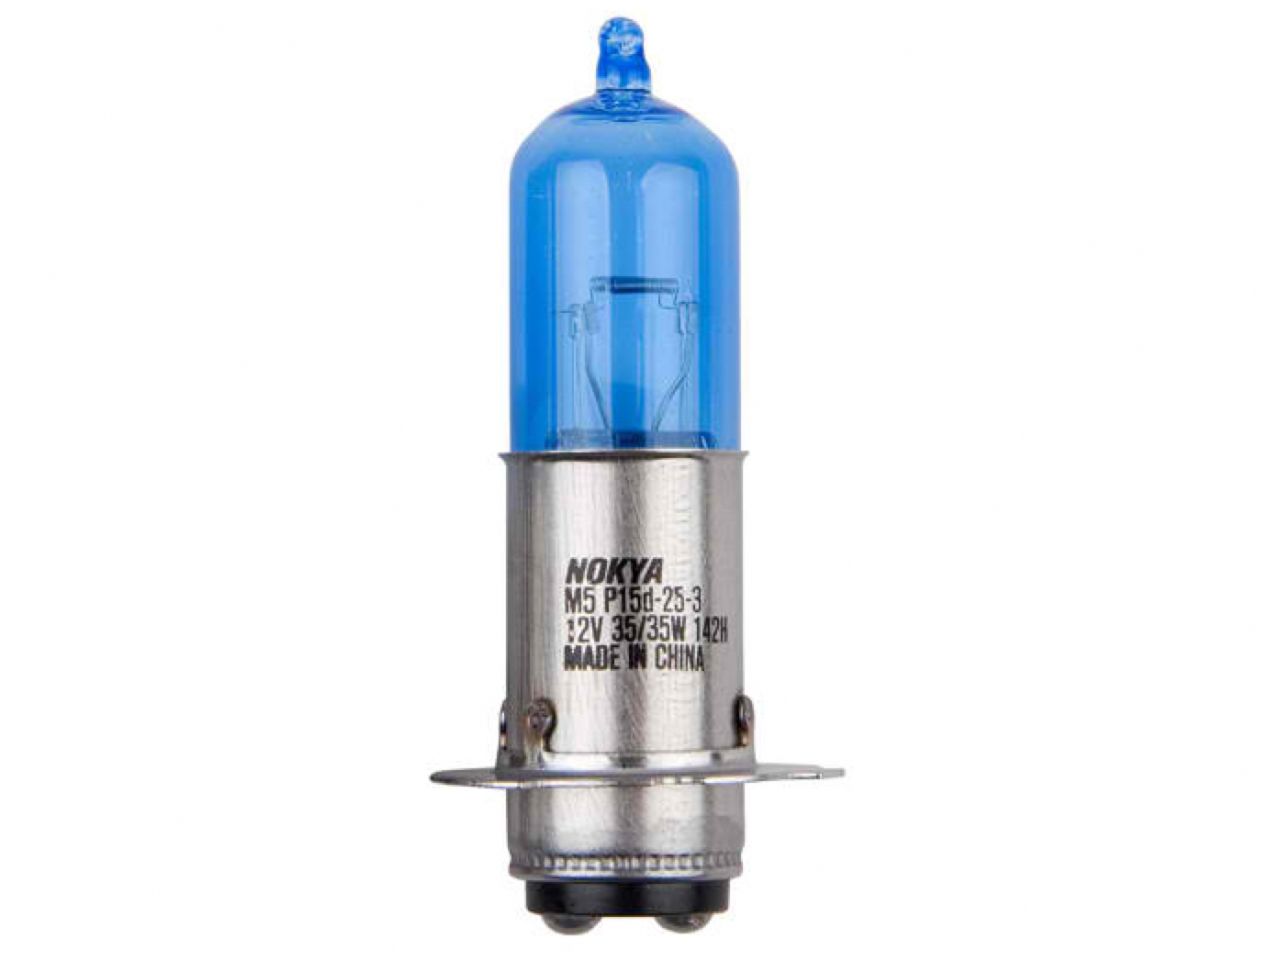 Nokya Powersport Headlight Bulb Ultra White HS1 12V 35/35W (2pc)